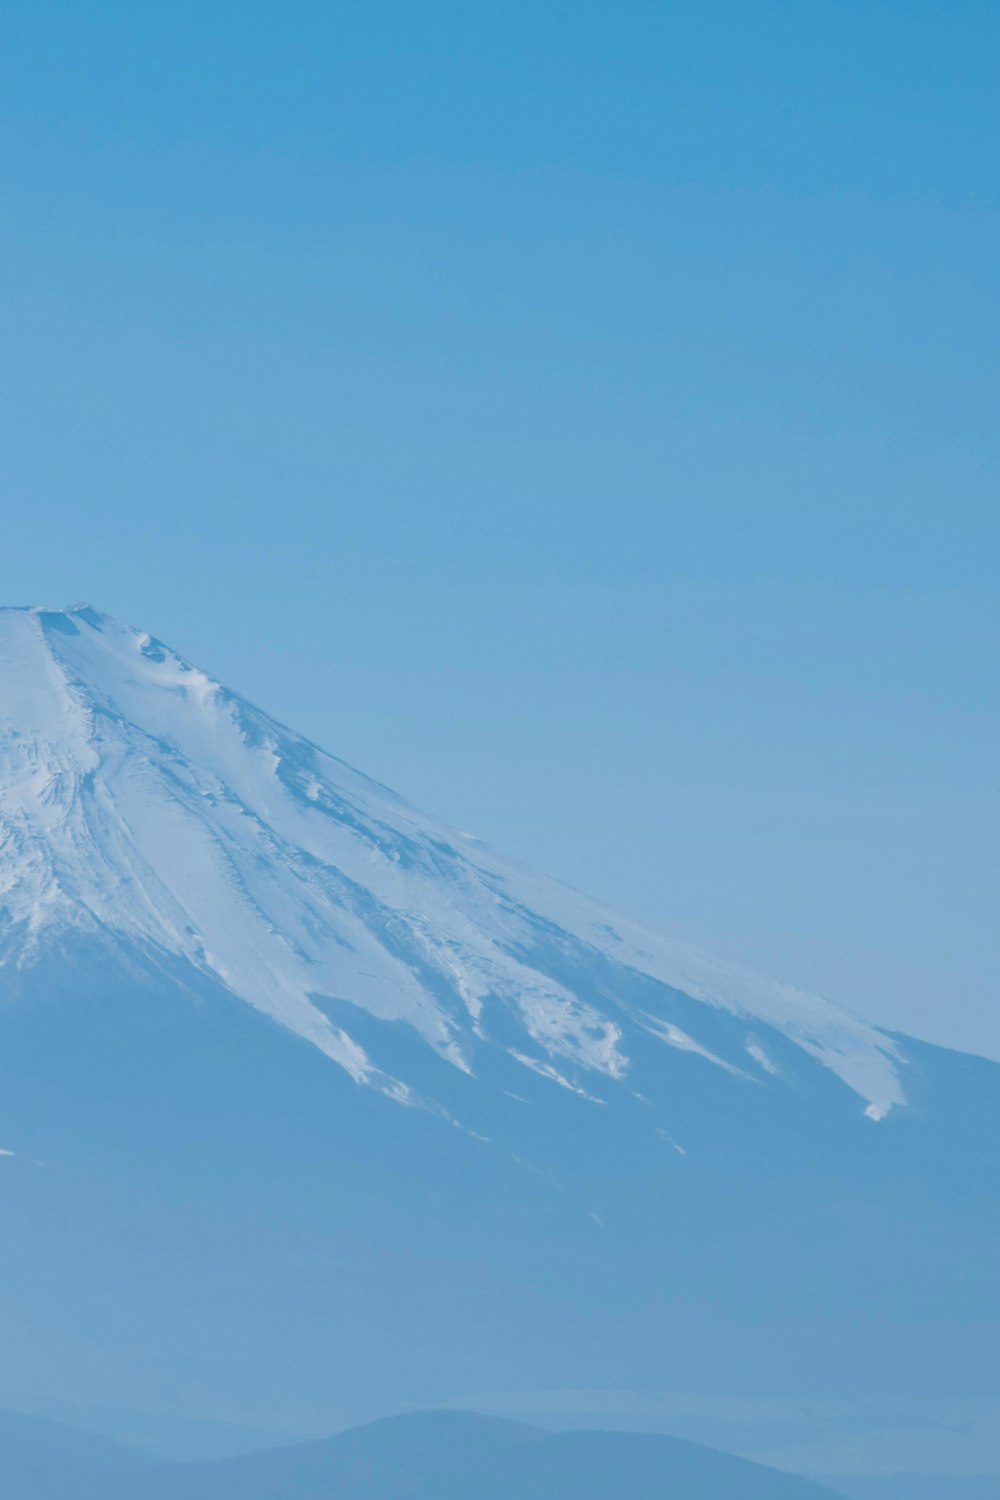 uma montanha coberta de neve ao longe sob um céu azul